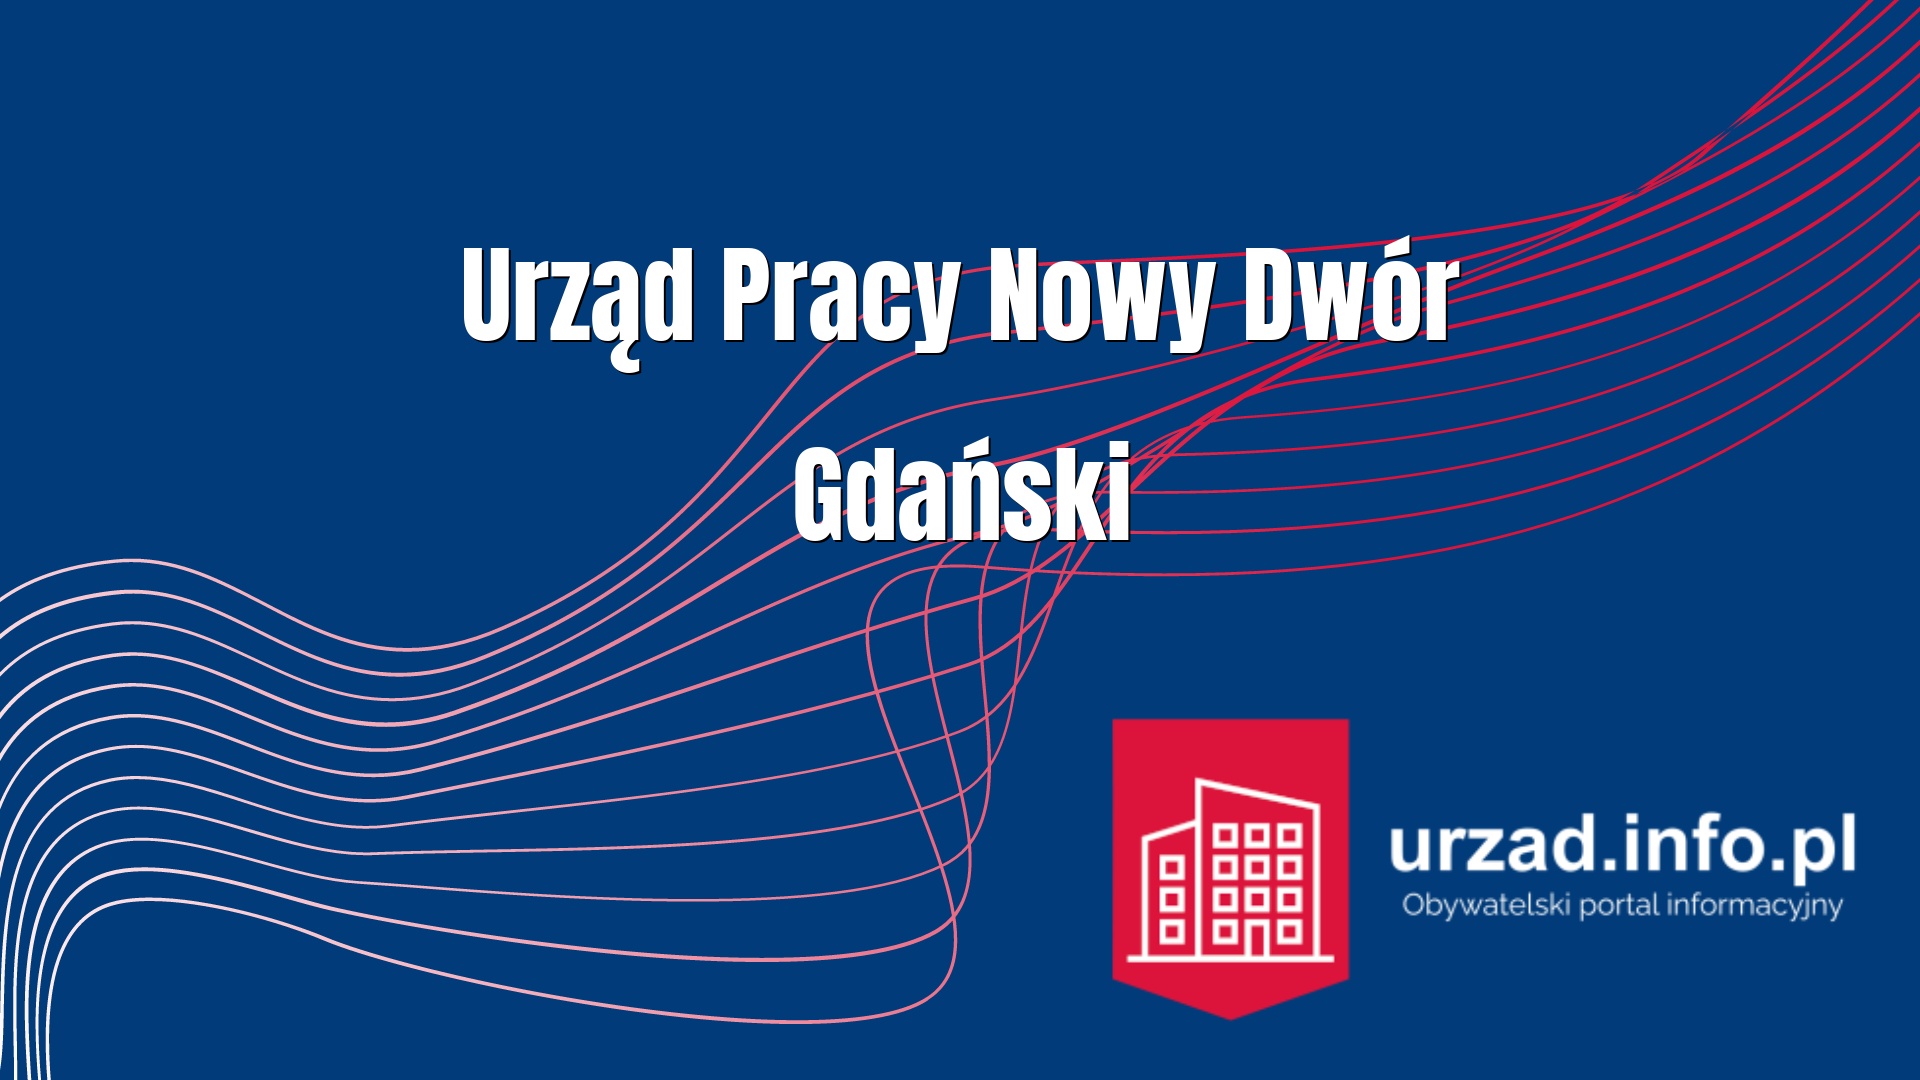 Urząd Pracy Nowy Dwór Gdański